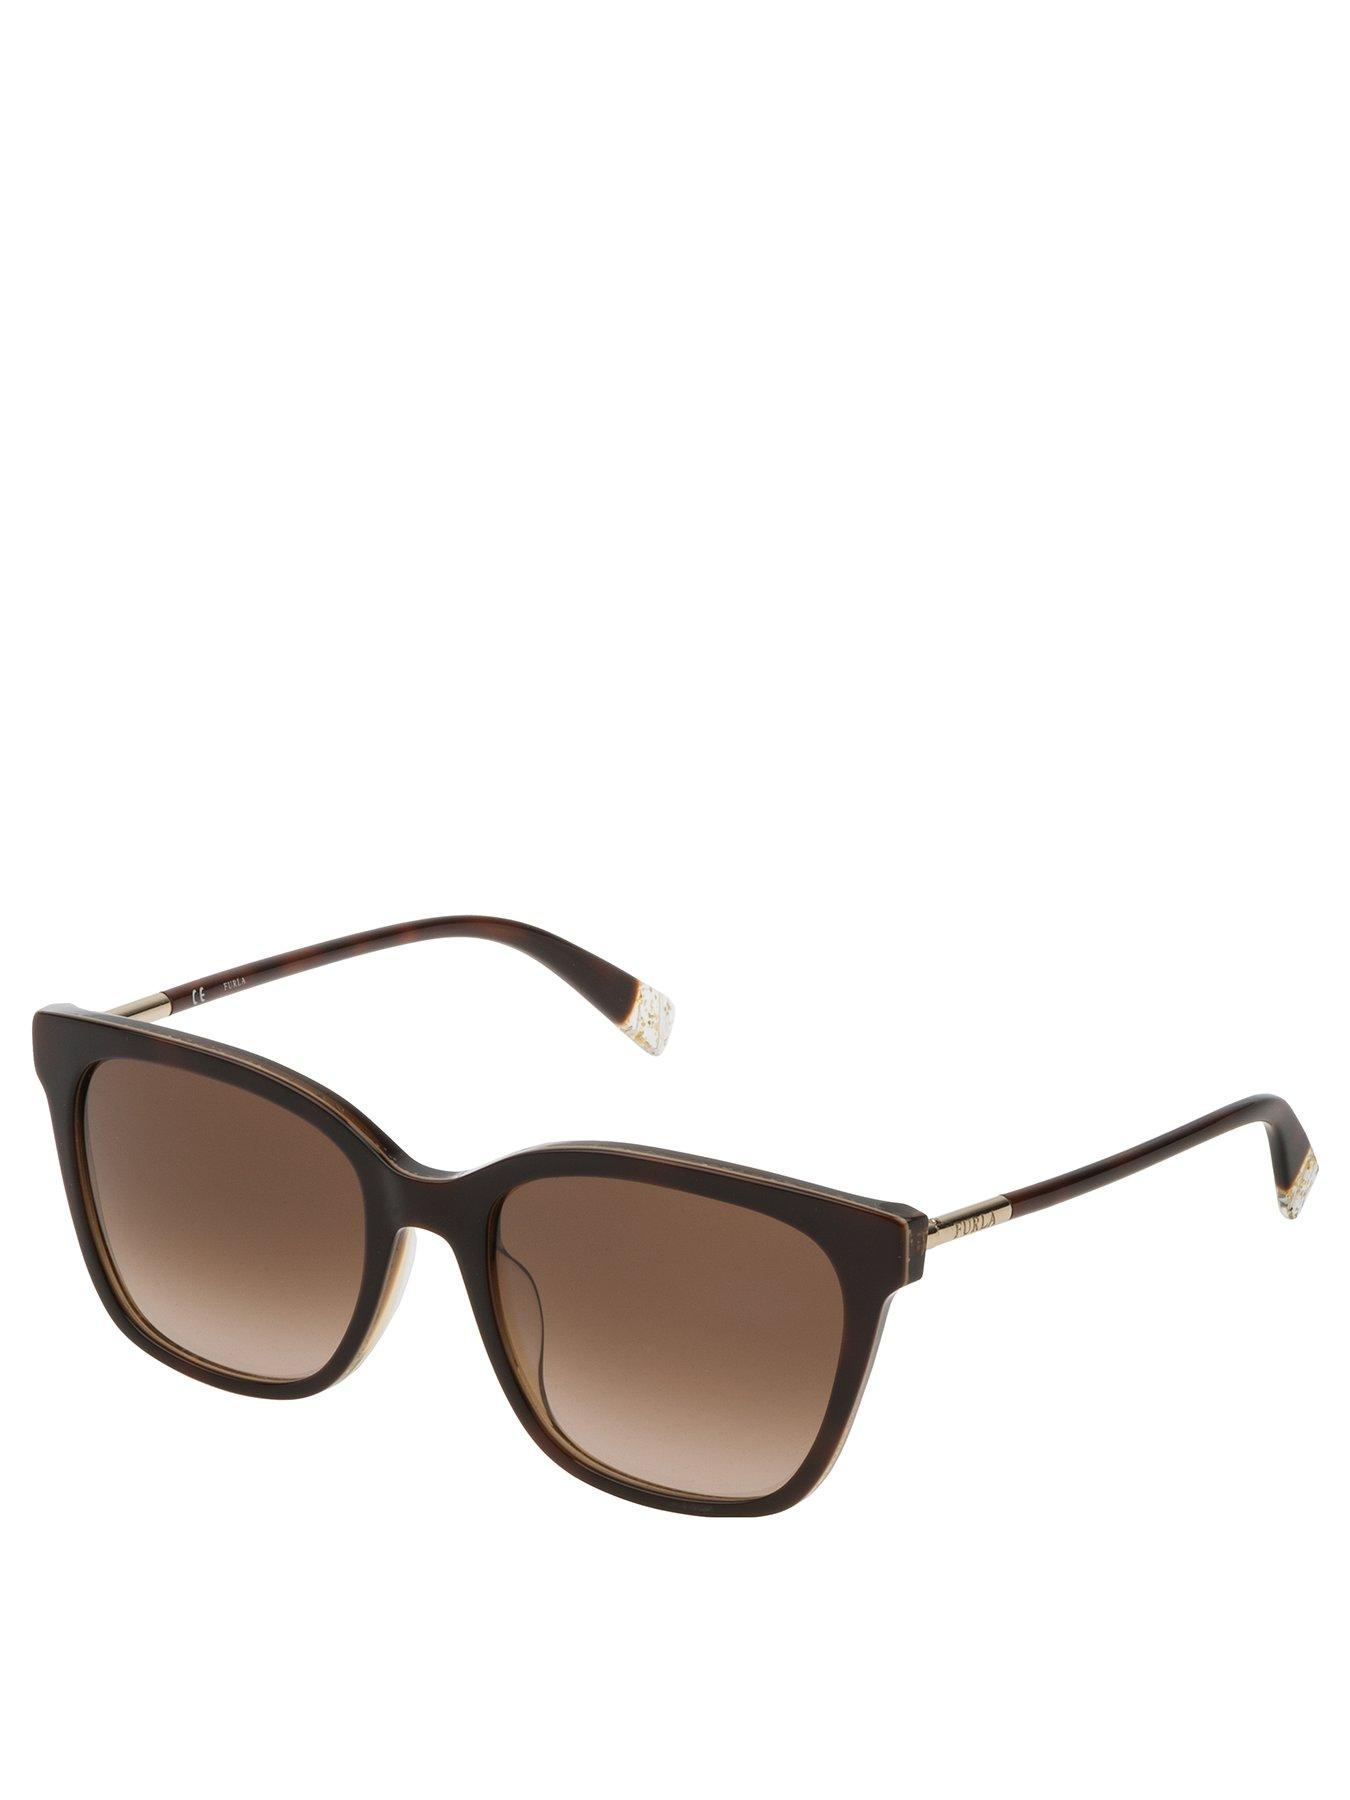 Women Square Sunglasses - Brown